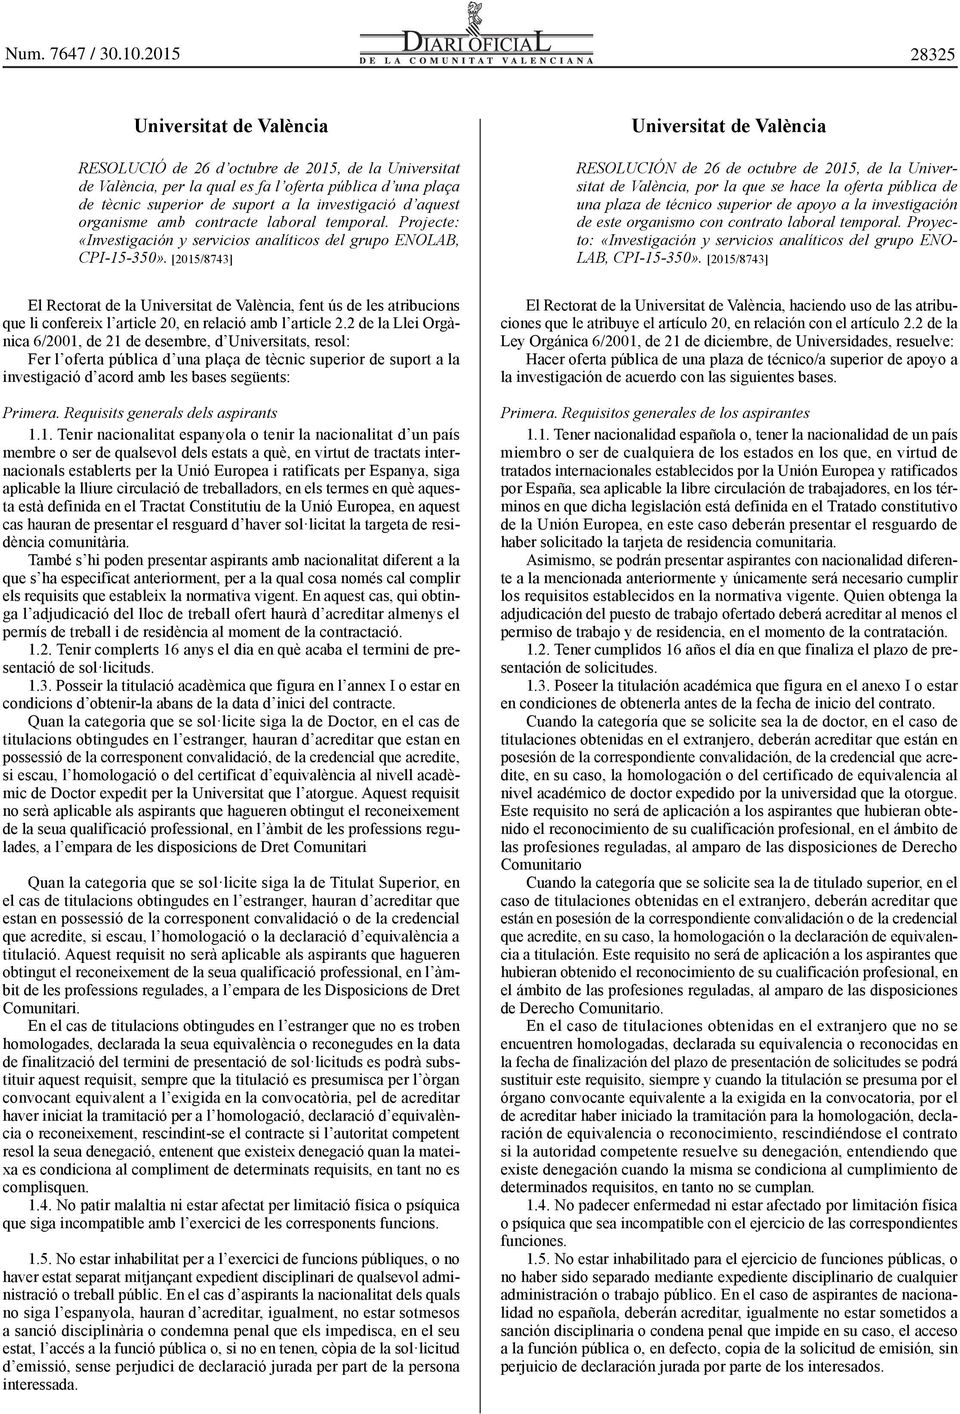 [2015/8743] El Rectorat de la Universitat de València, fent ús de les atribucions que li confereix l article 20, en relació amb l article 2.